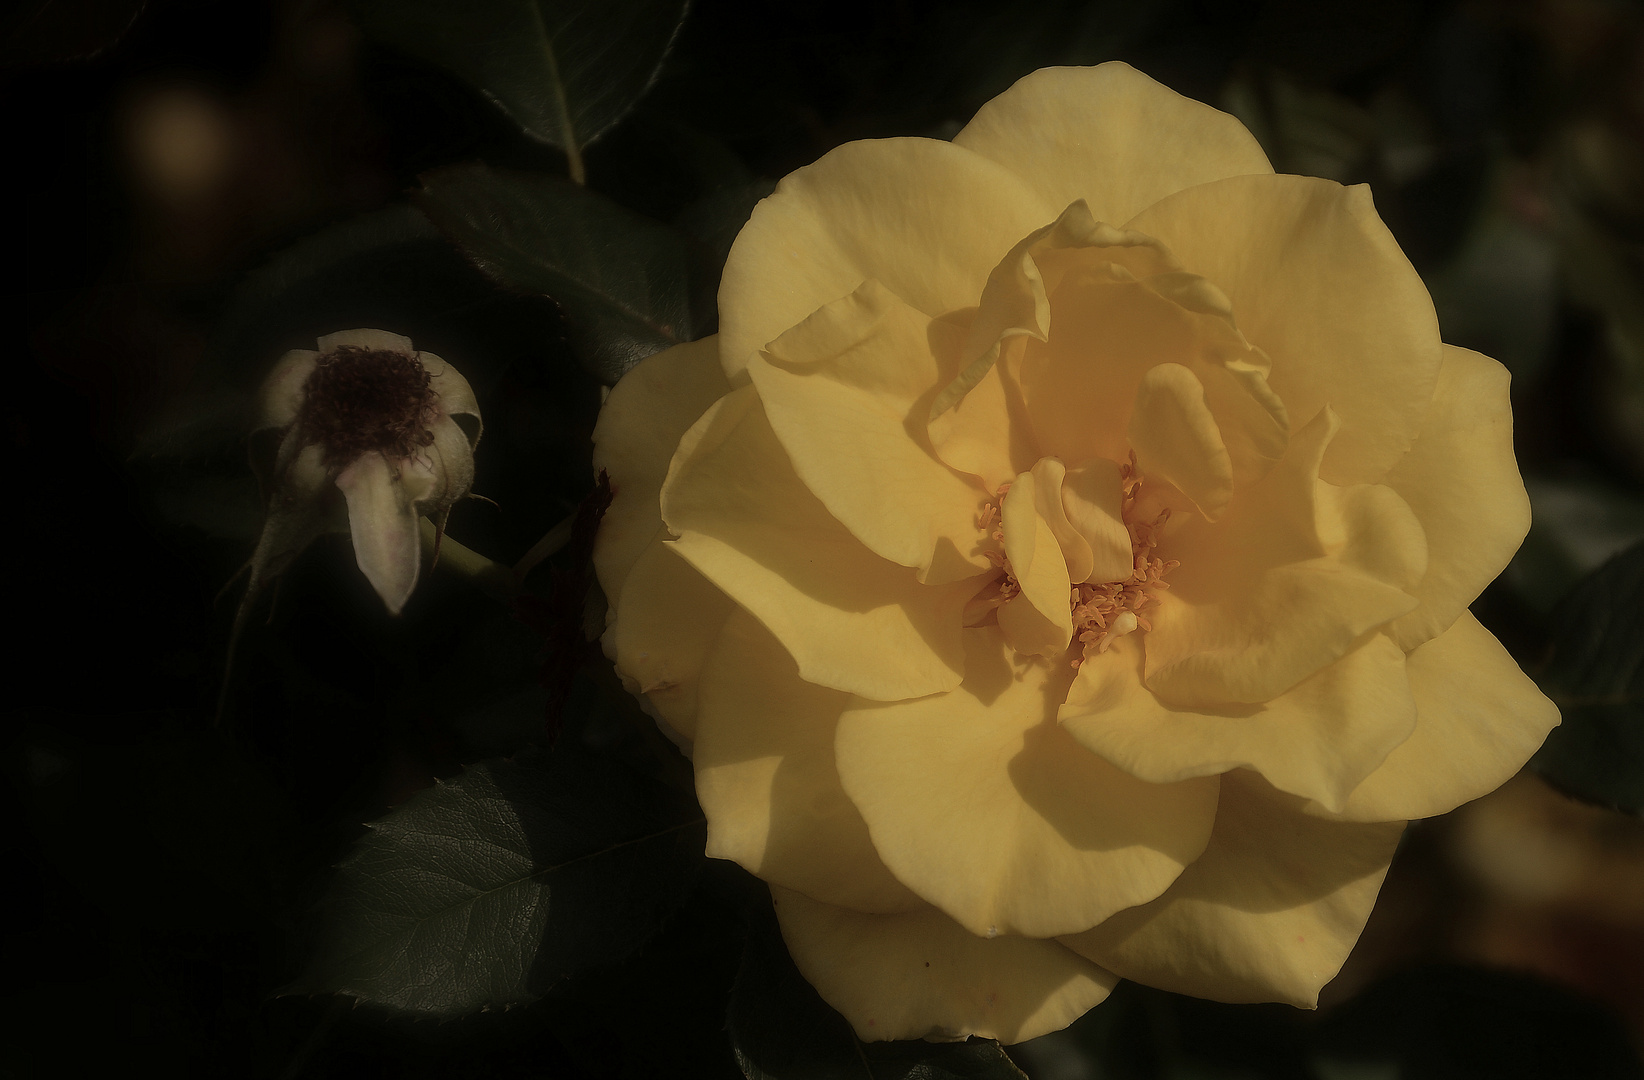 Gelbe Rose im Abendlicht